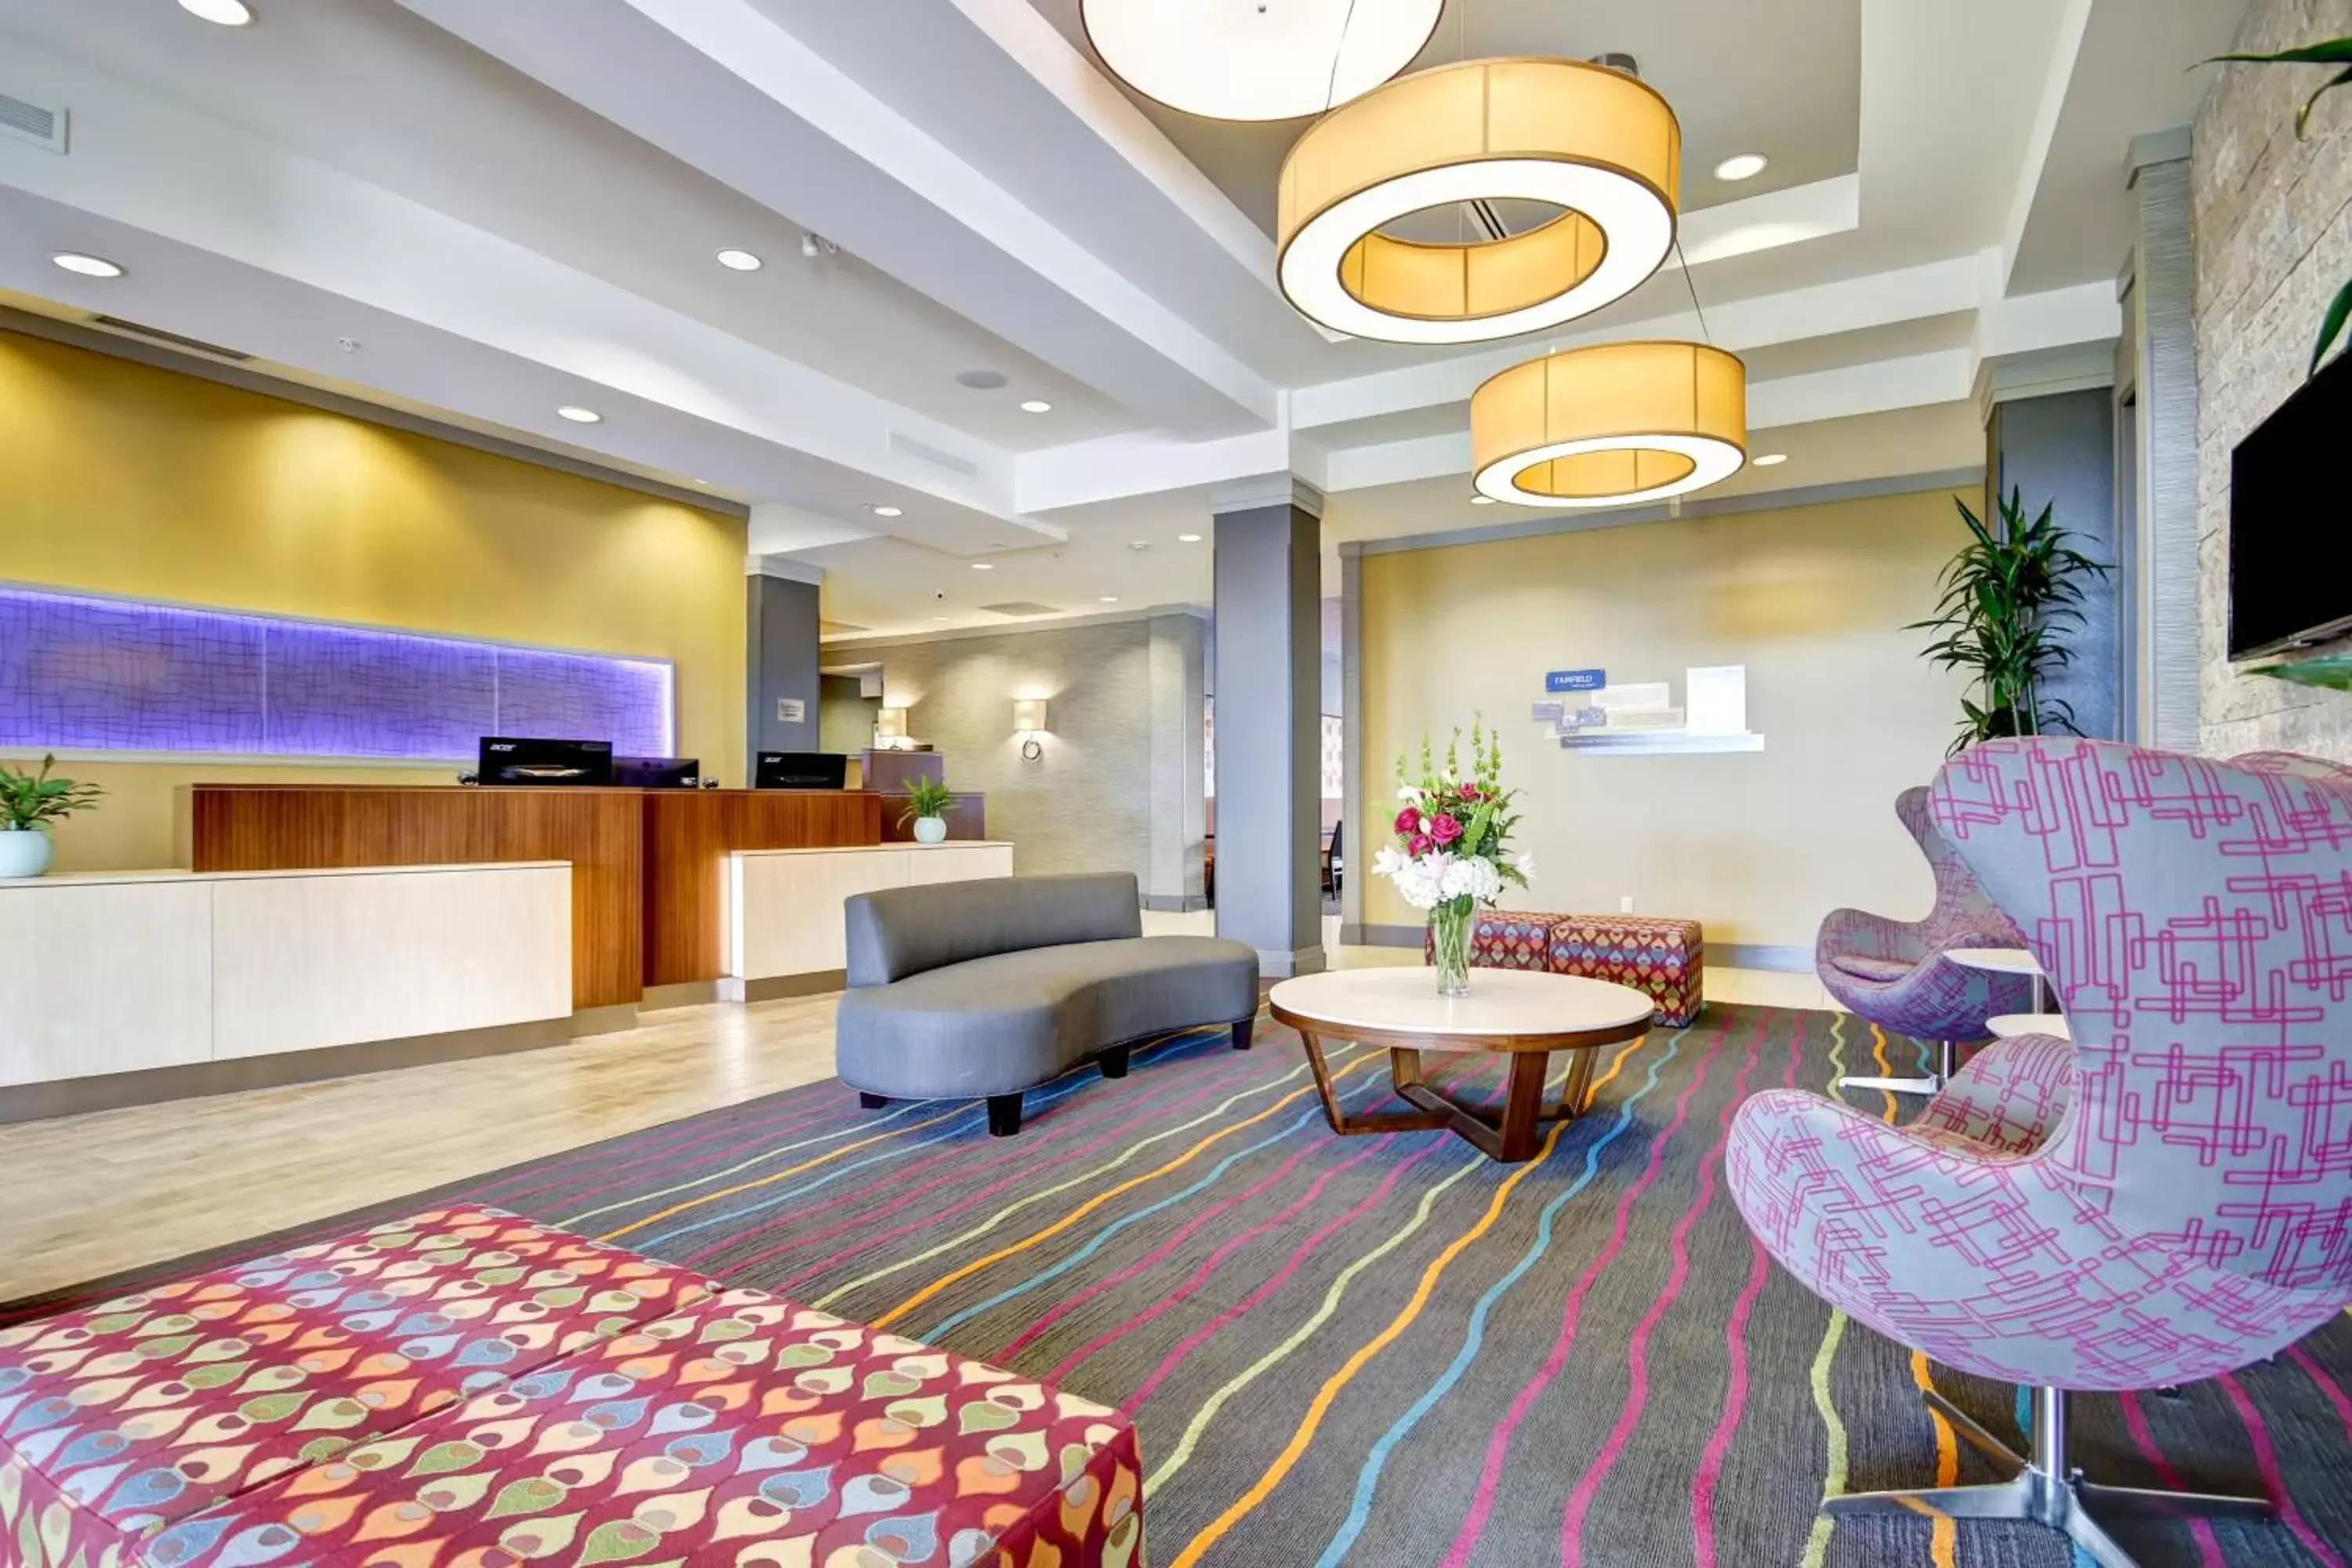 Lobby or reception, Lobby/Reception in Fairfield Inn & Suites by Marriott Guelph